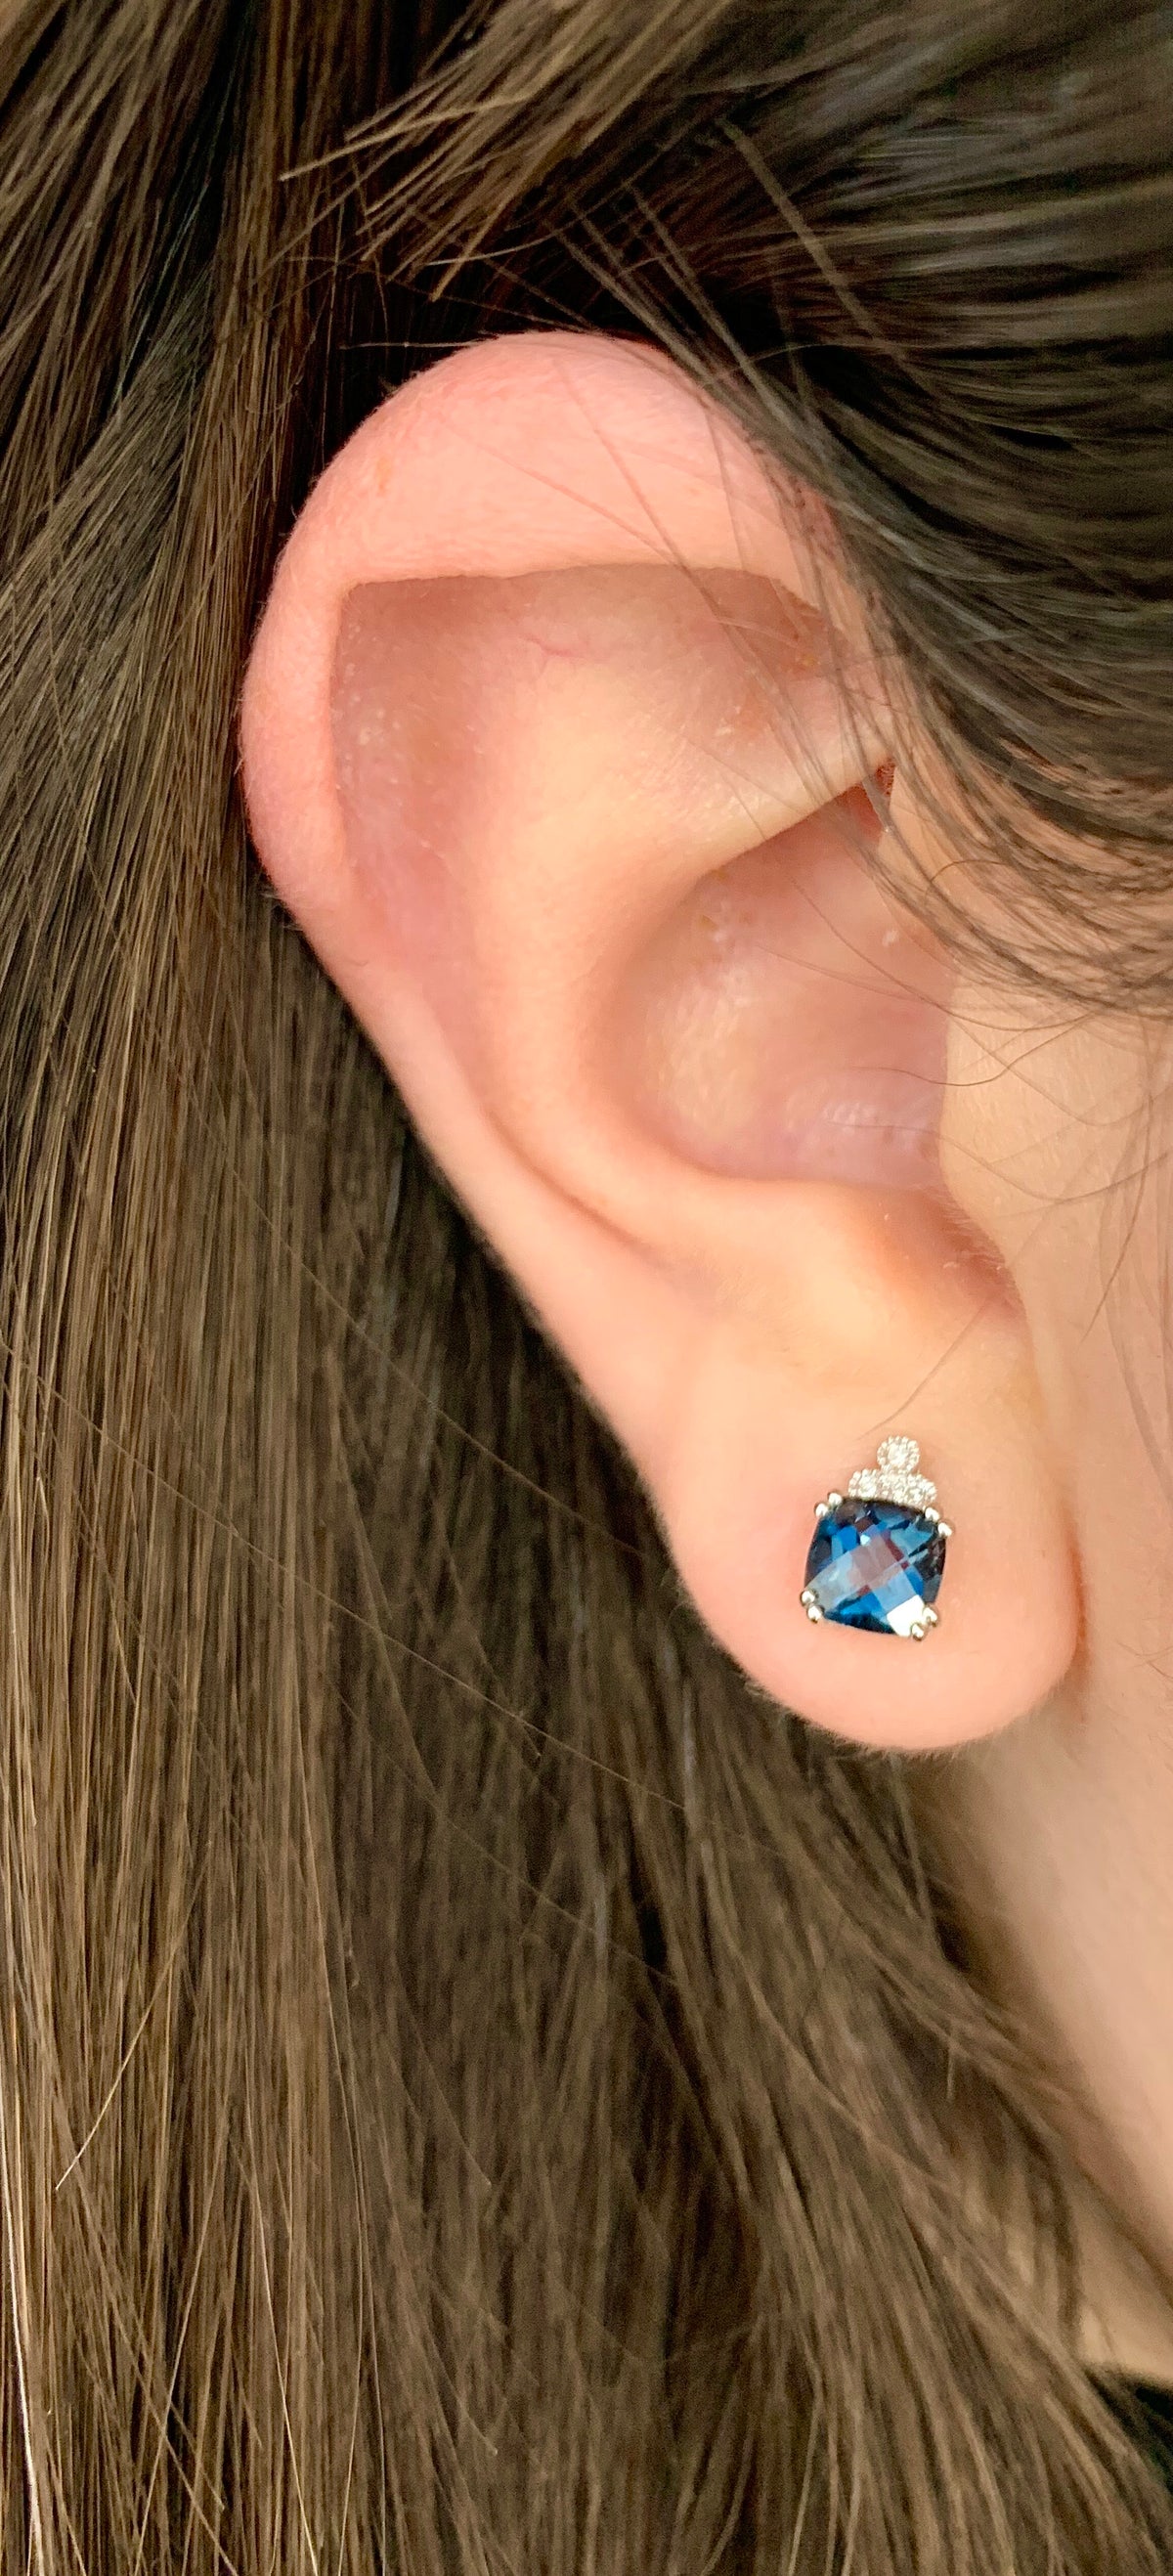 2.5 ct Princess Cut London Blue Topaz Stud Earrings in Sterling Silver -  Walmart.com